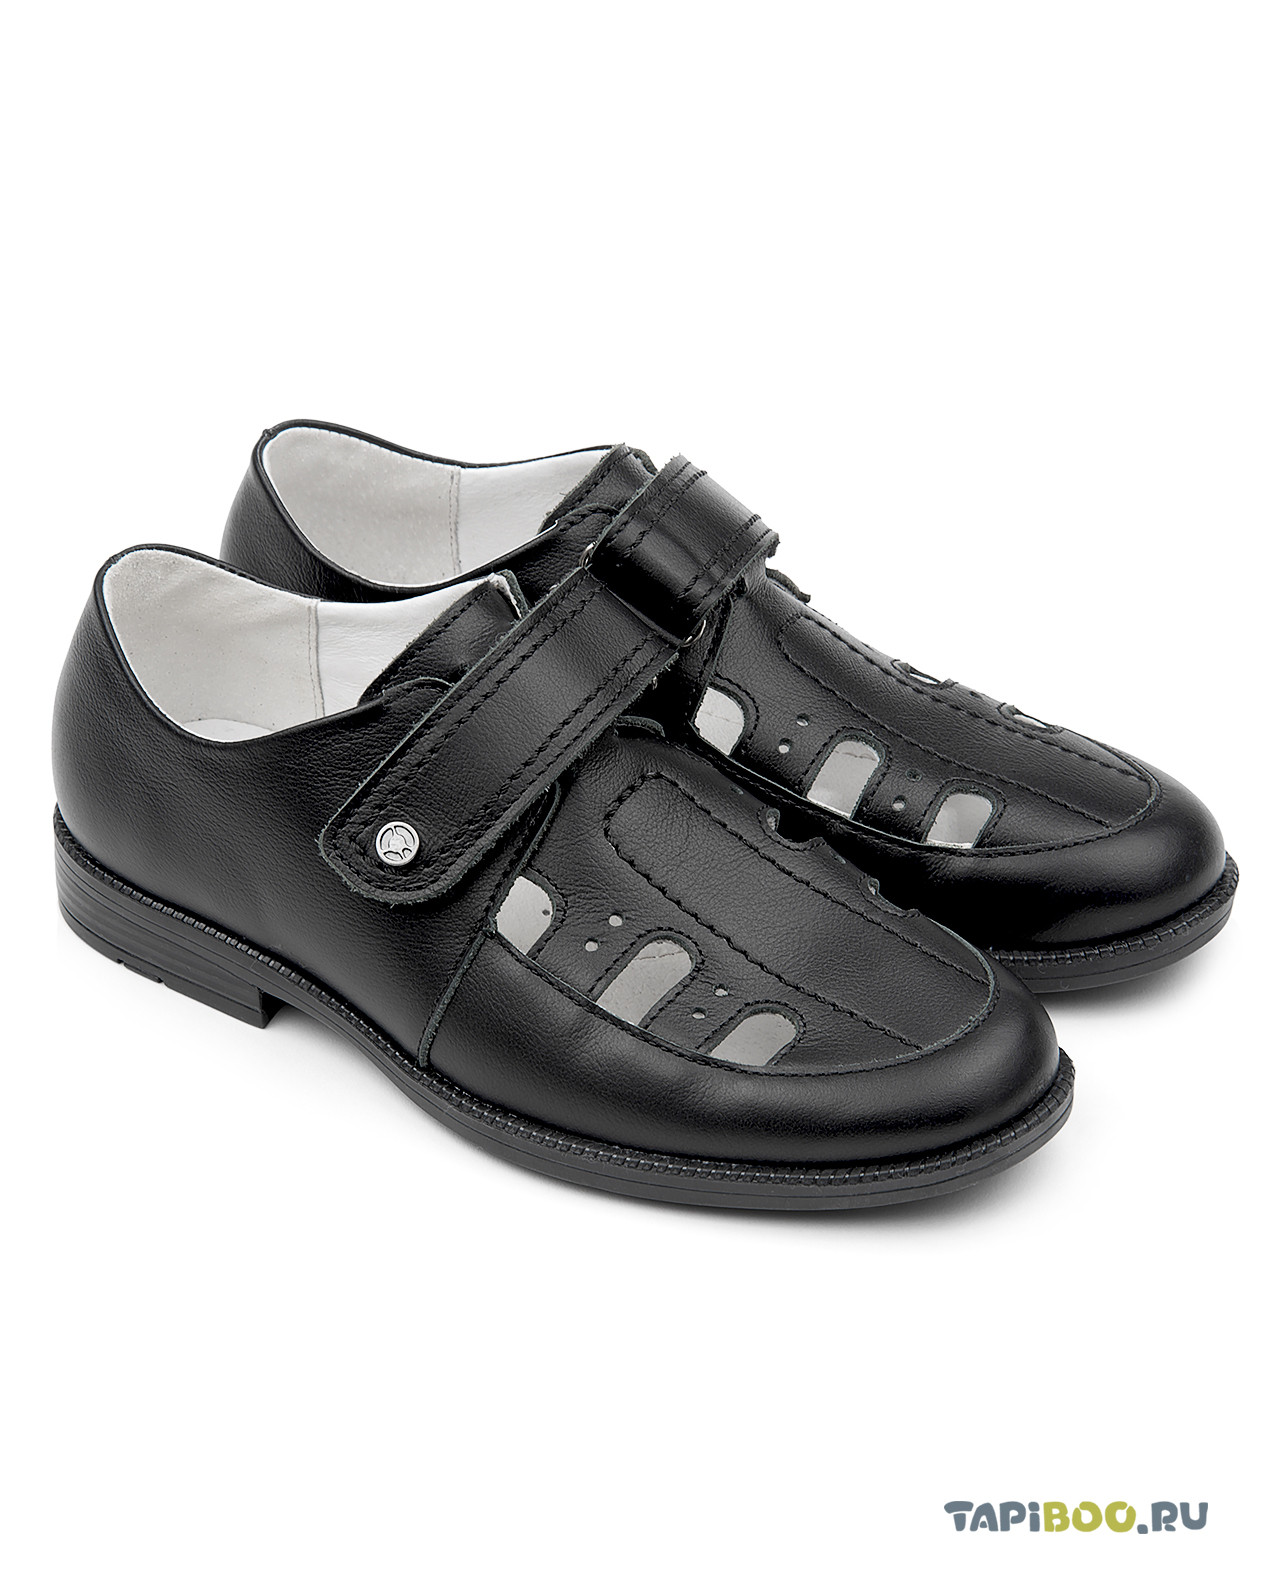 Полуботинки детские Tapiboo СТЕП (67303, 42) туфли детские tapiboo степ черный 80174 32